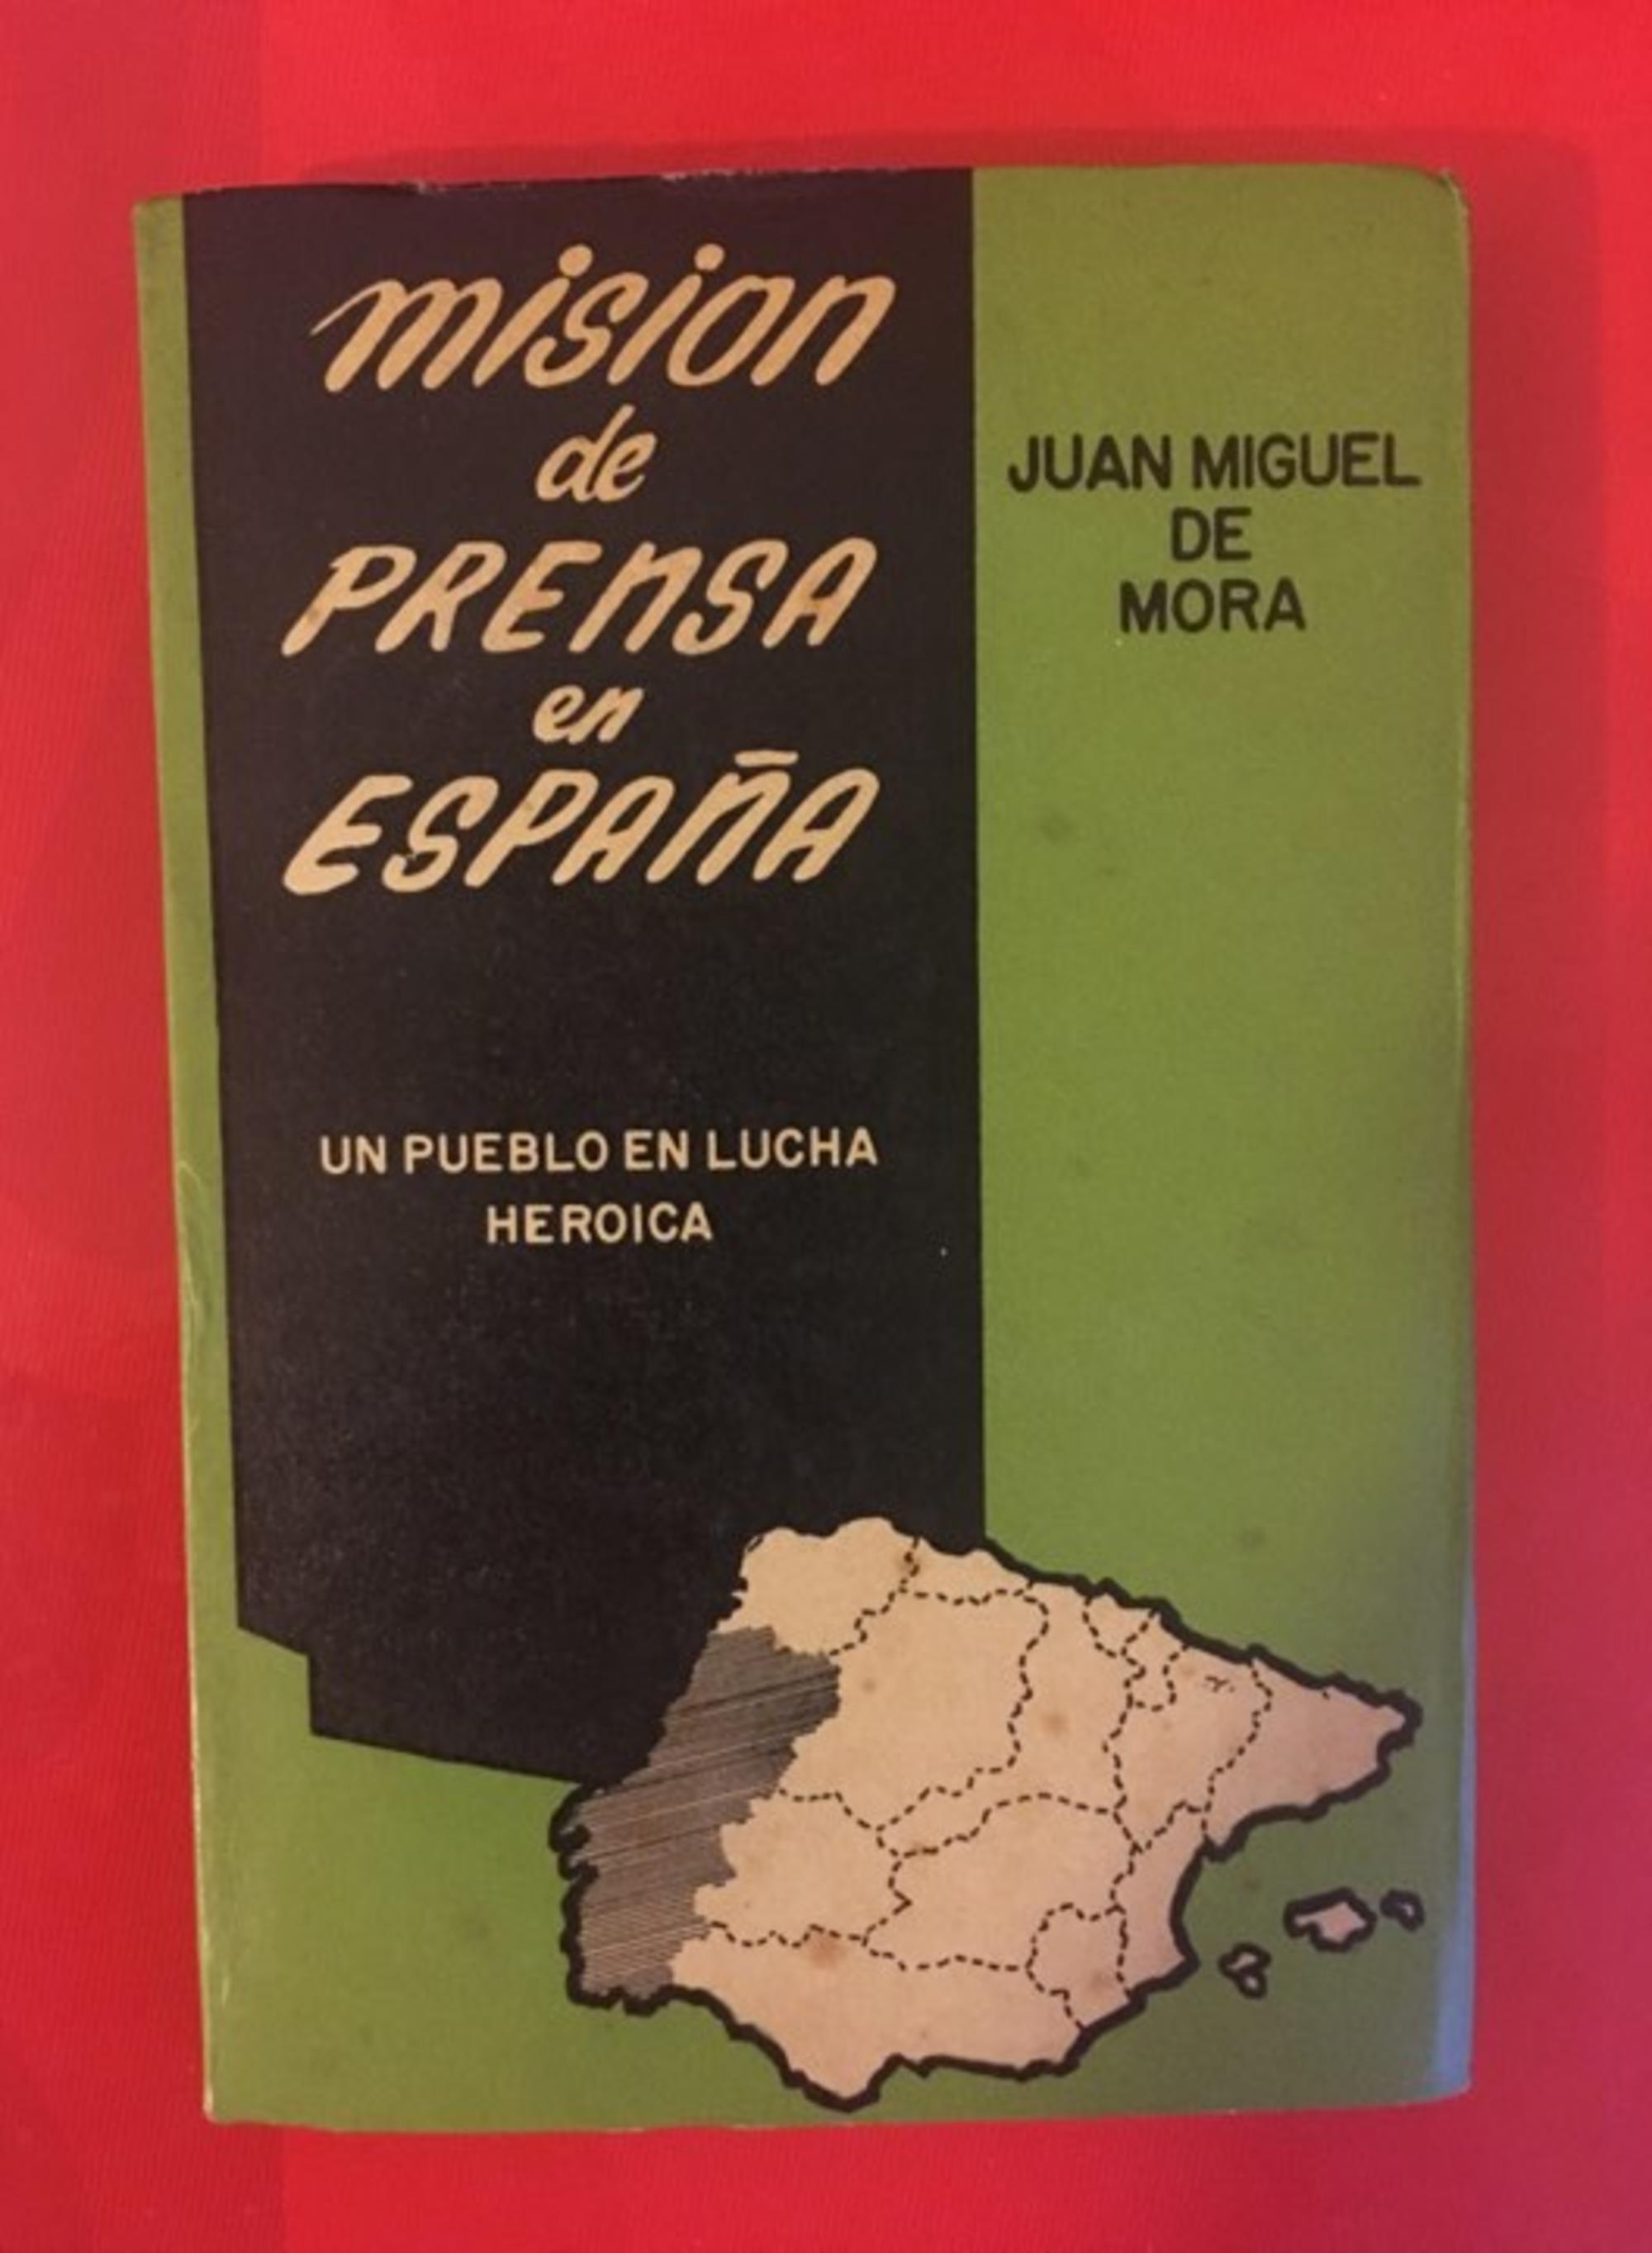 Libro de Miguel de Mora sobre la reistencia antifranquista